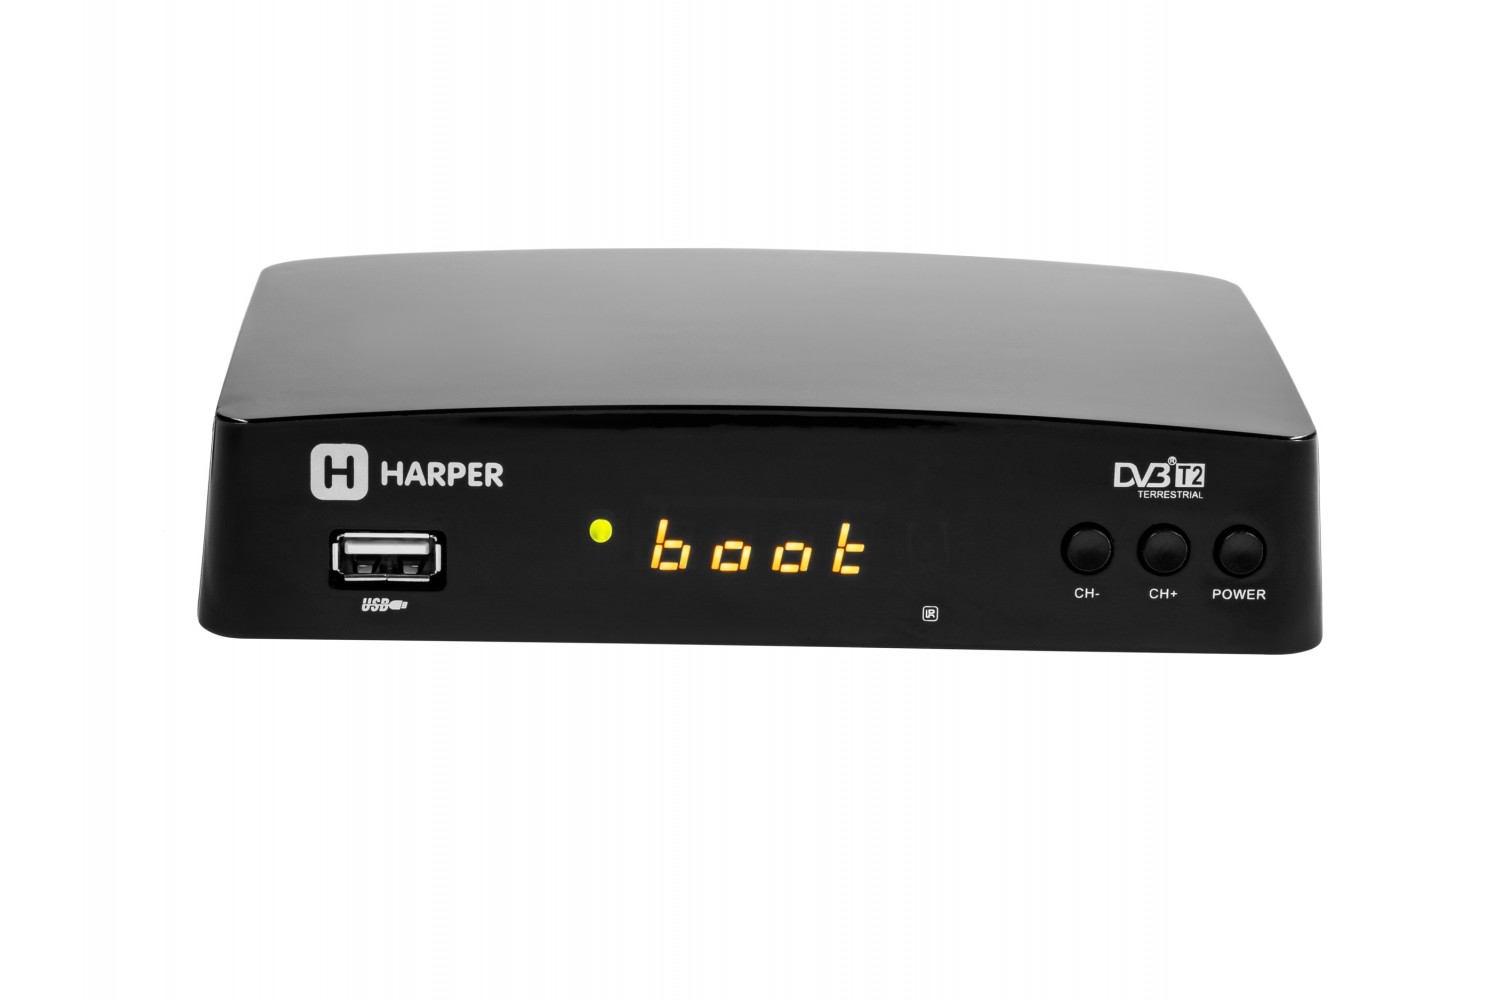  HARPER HDT2-1511 DVB-T2///MStar